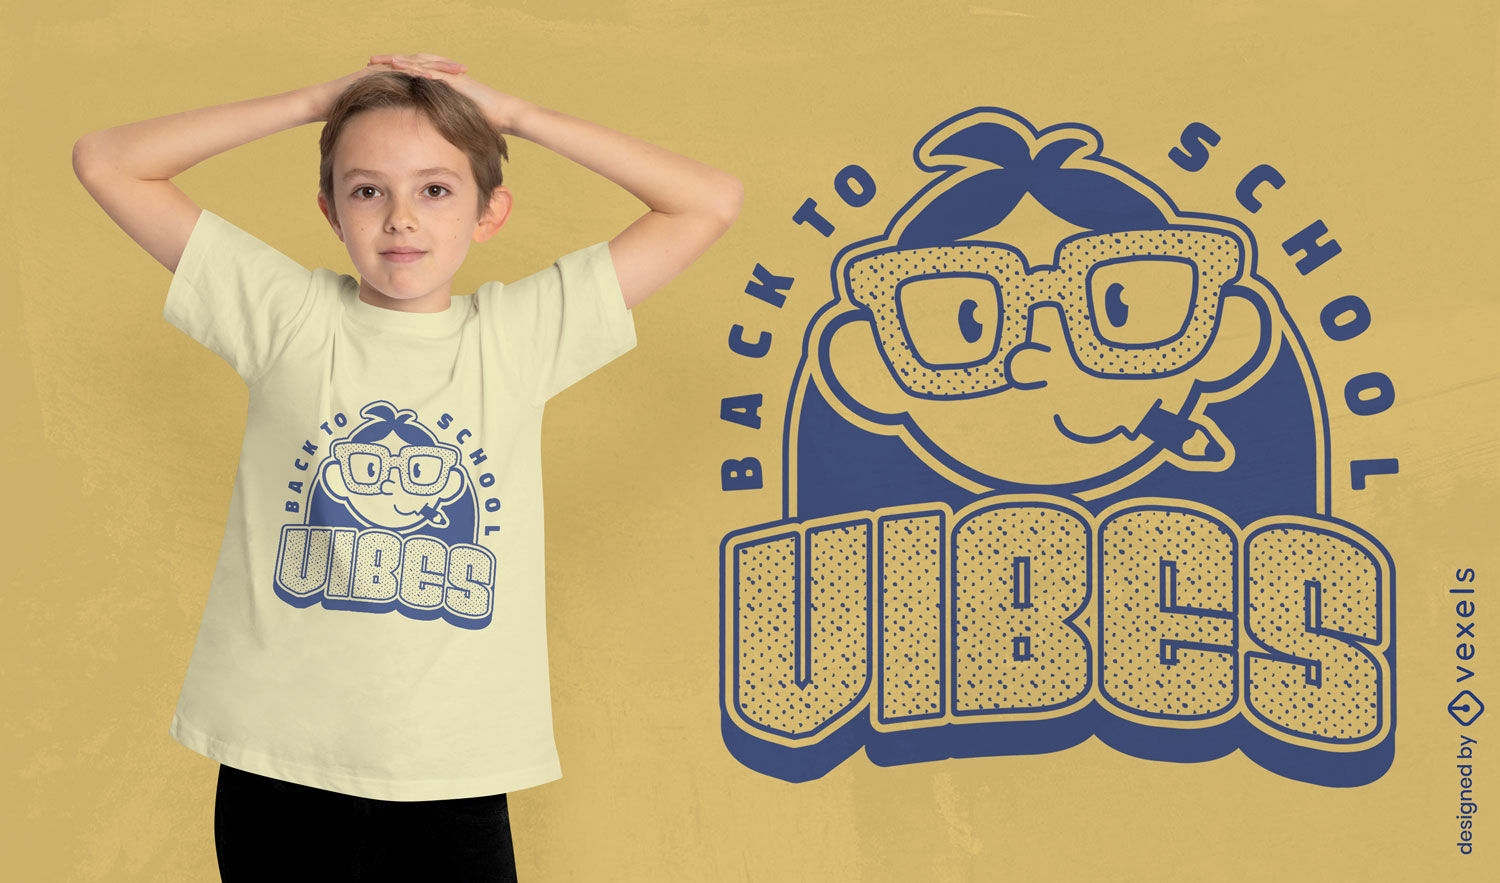 Zur?ck zu Schule nerdy Kinder-T-Shirt-Design